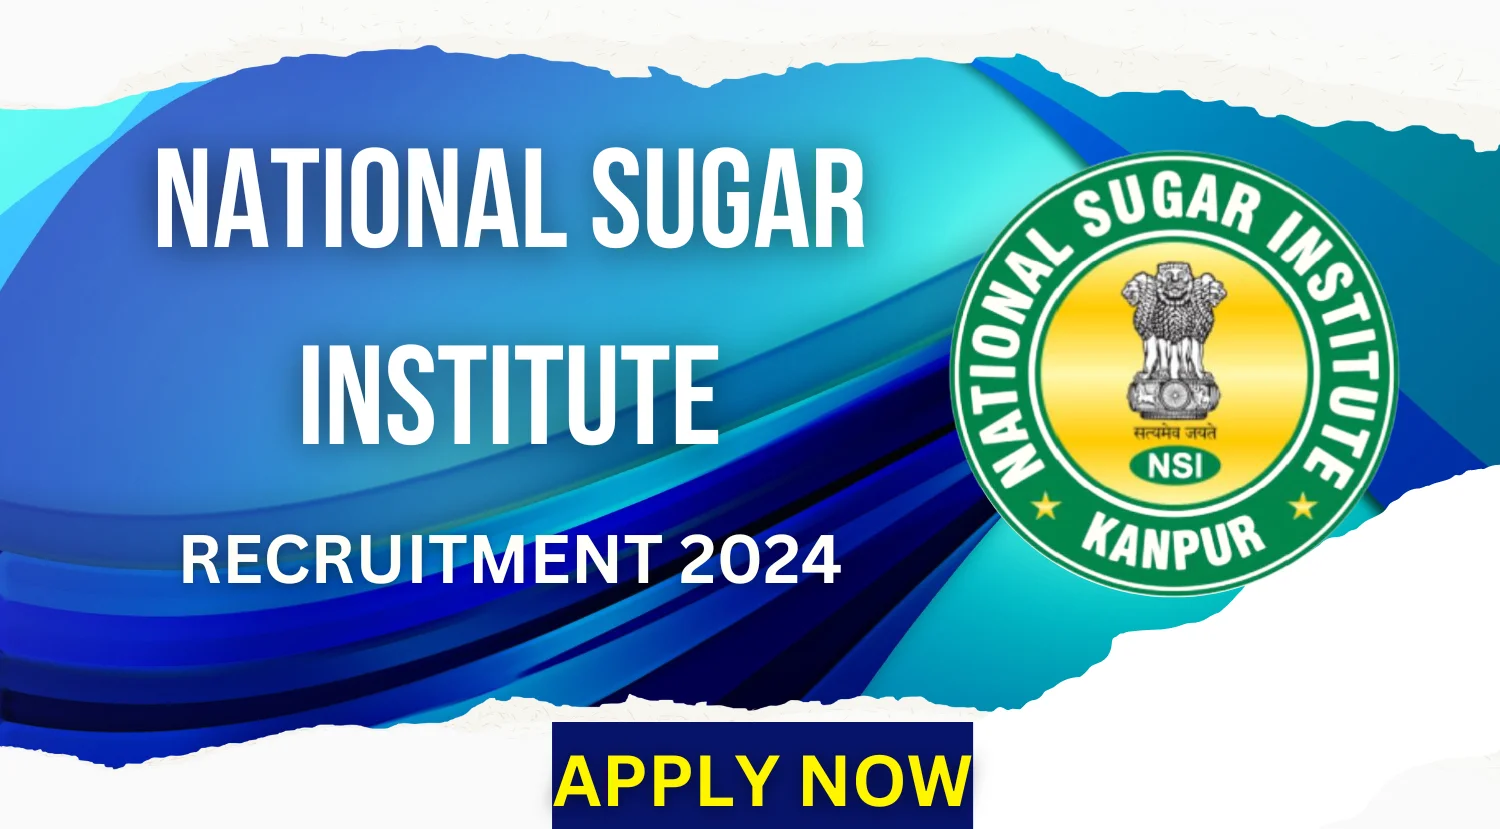 National Sugar Institute (NSI) Recruitment 2024 Notification